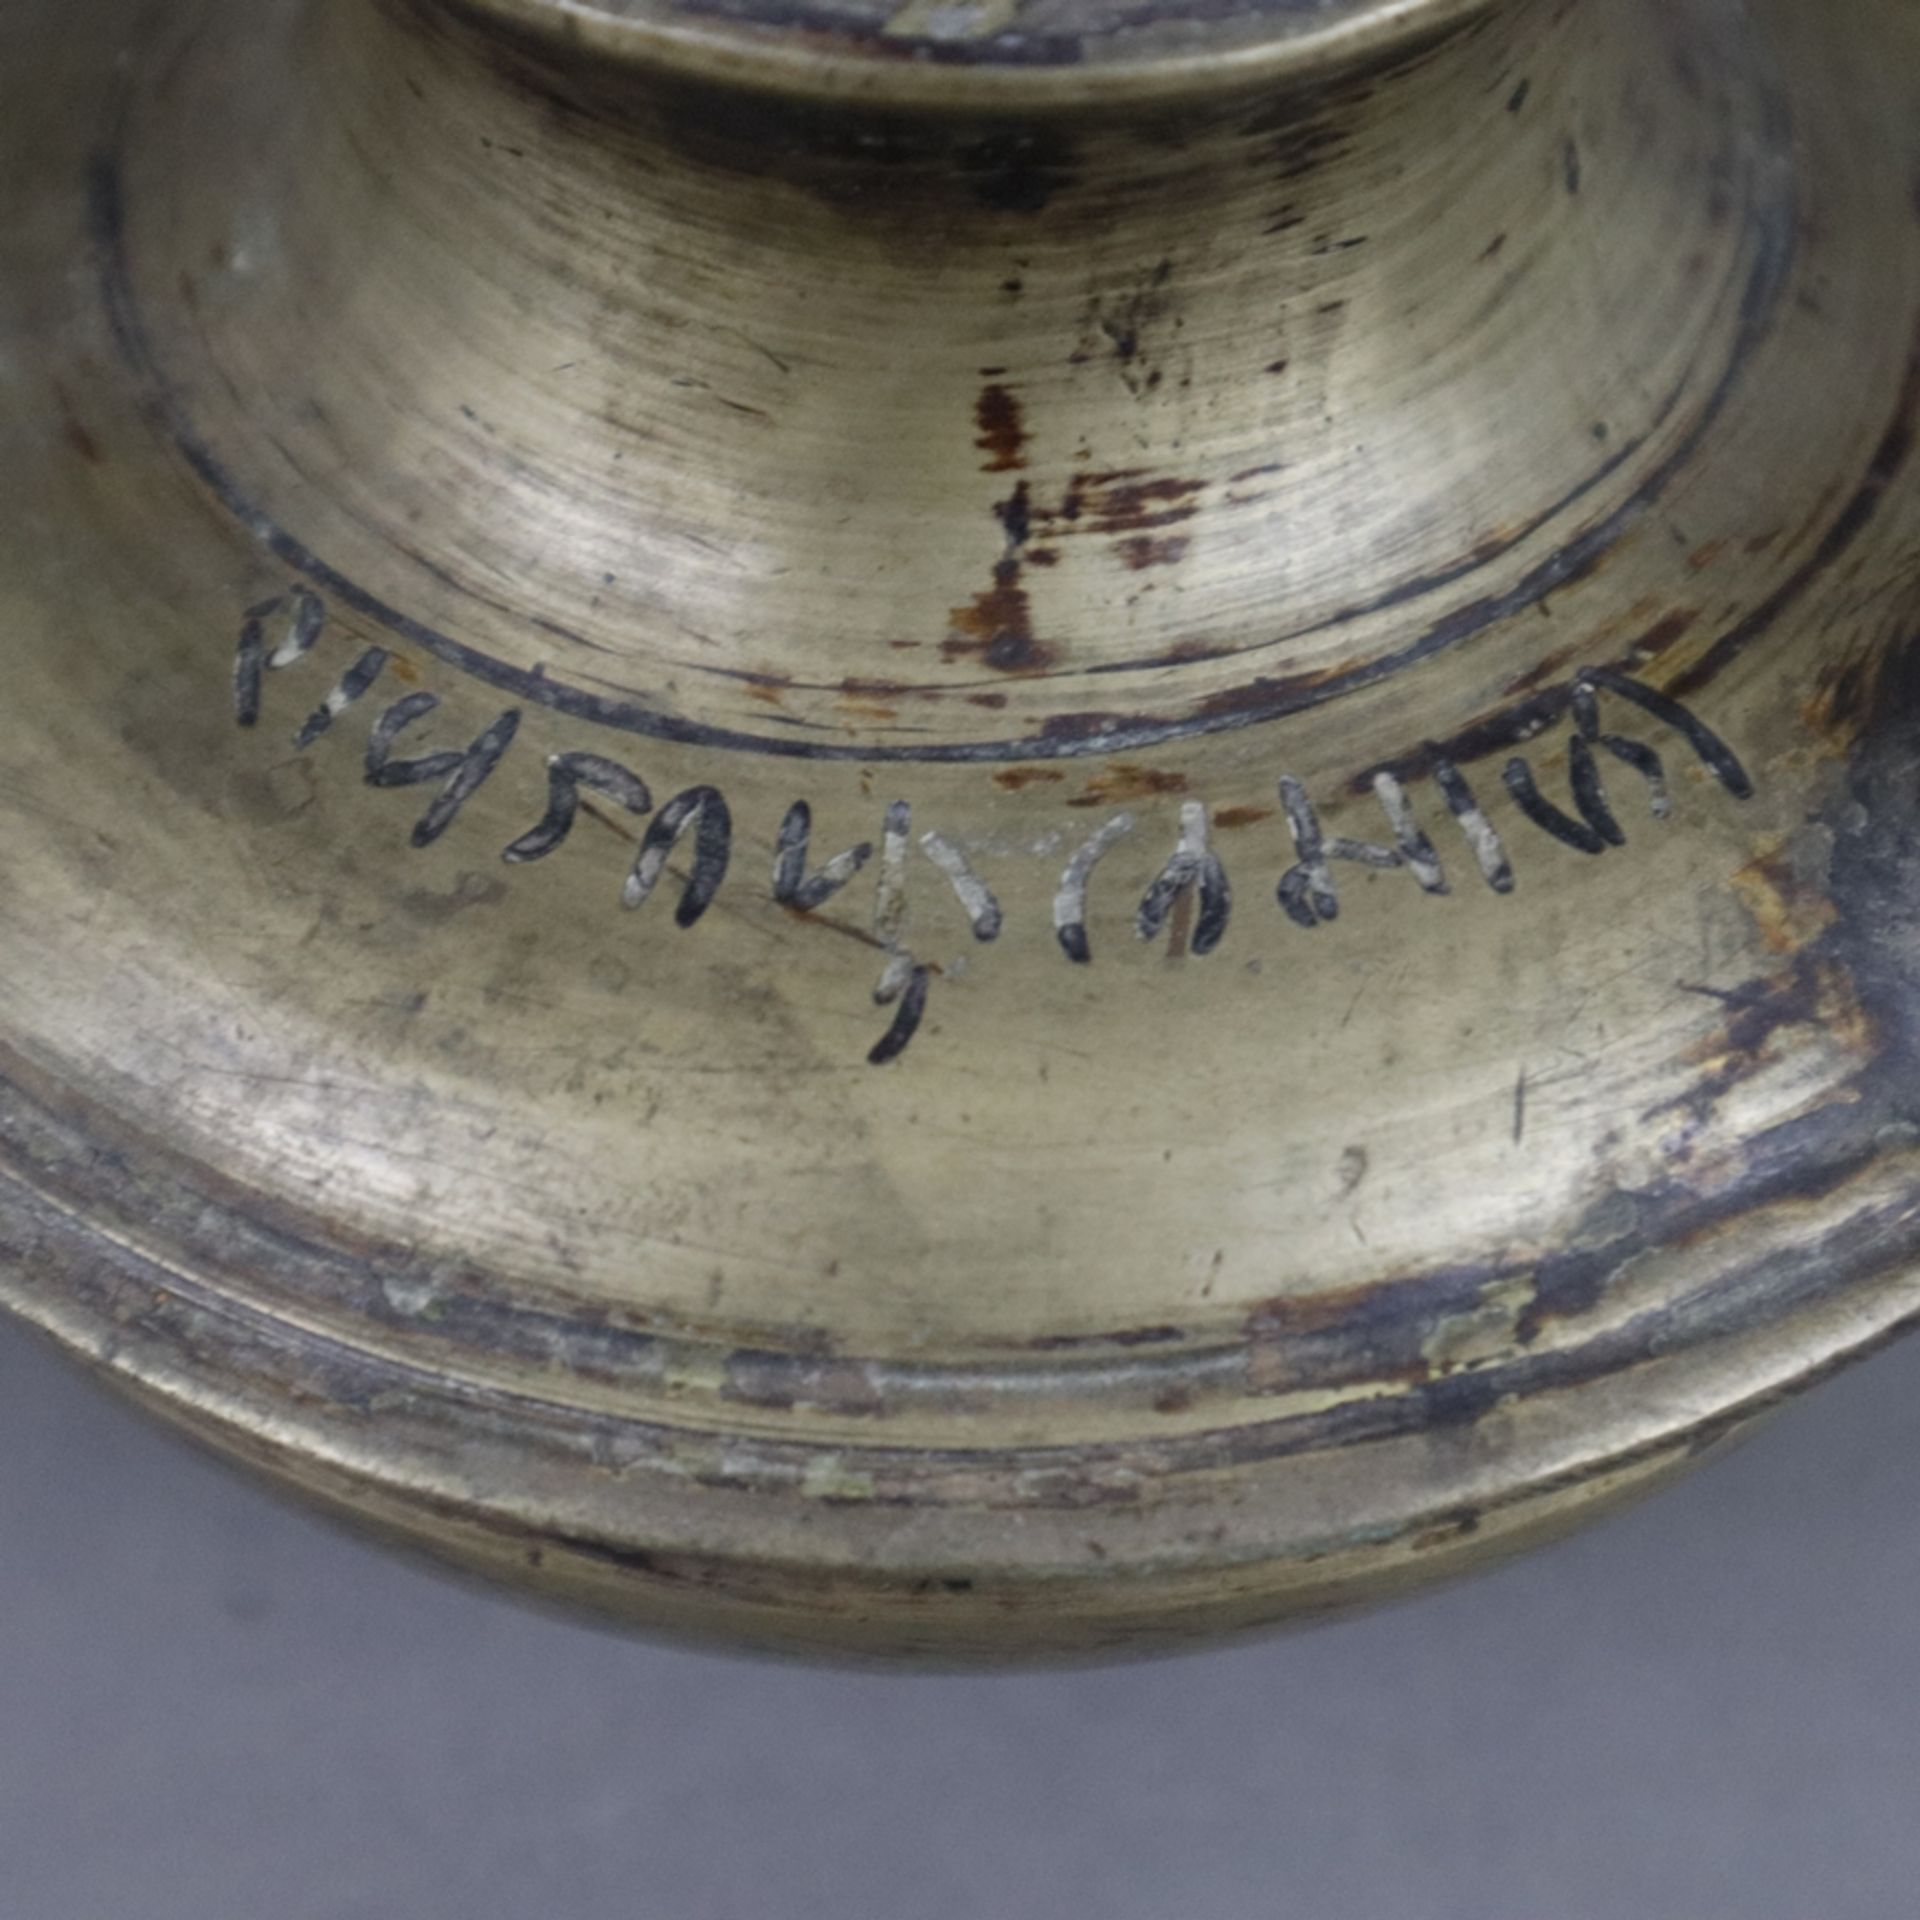 Kleine runde Kanne - Indien?, 19.Jh. oder früher, helle Bronze / Gelbguss, runde Form auf Standring - Bild 4 aus 6